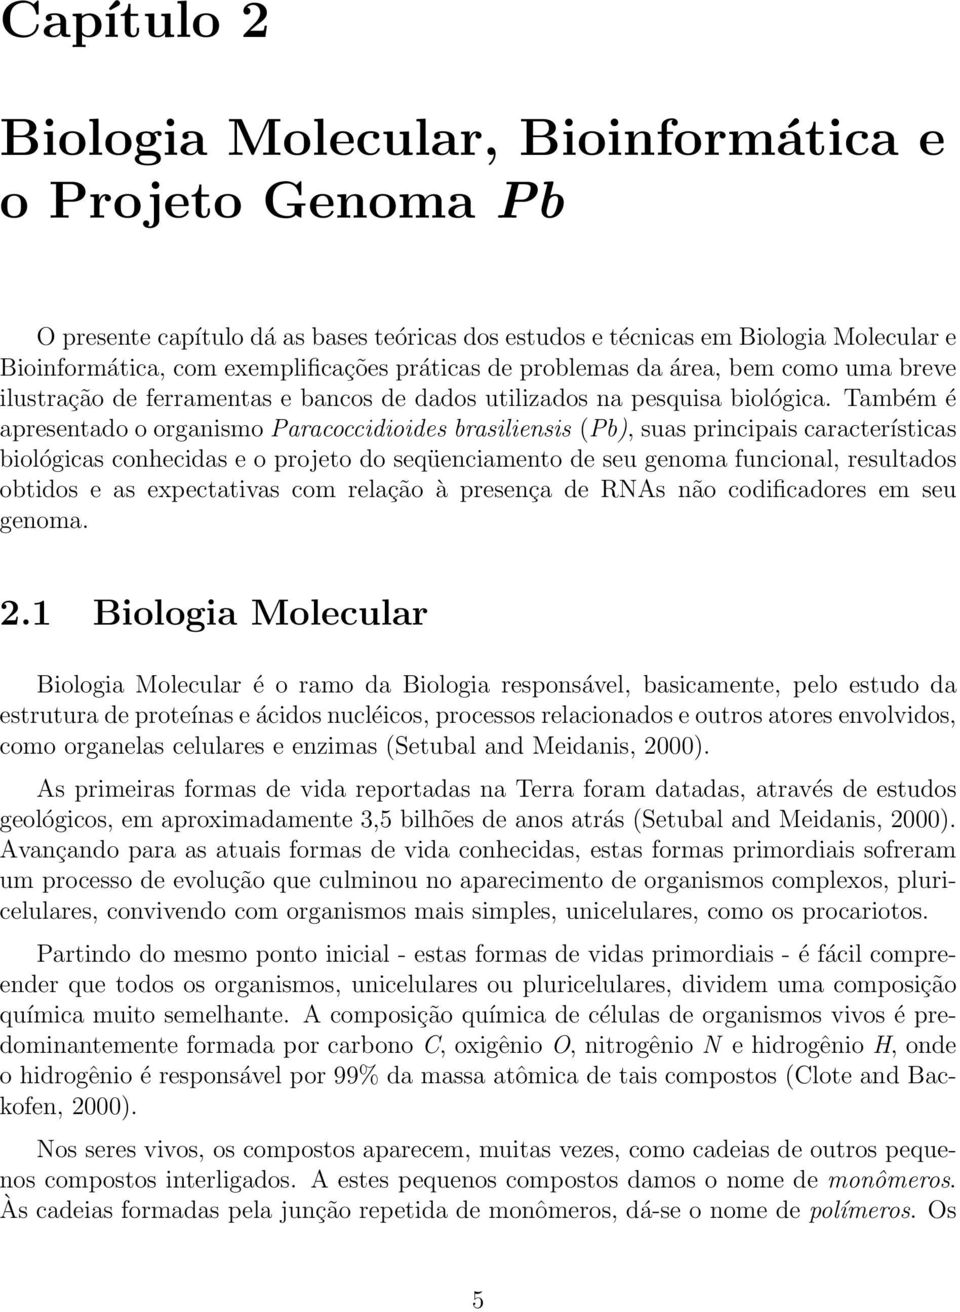 Também é apresentado o organismo Paracoccidioides brasiliensis (Pb), suas principais características biológicas conhecidas e o projeto do seqüenciamento de seu genoma funcional, resultados obtidos e